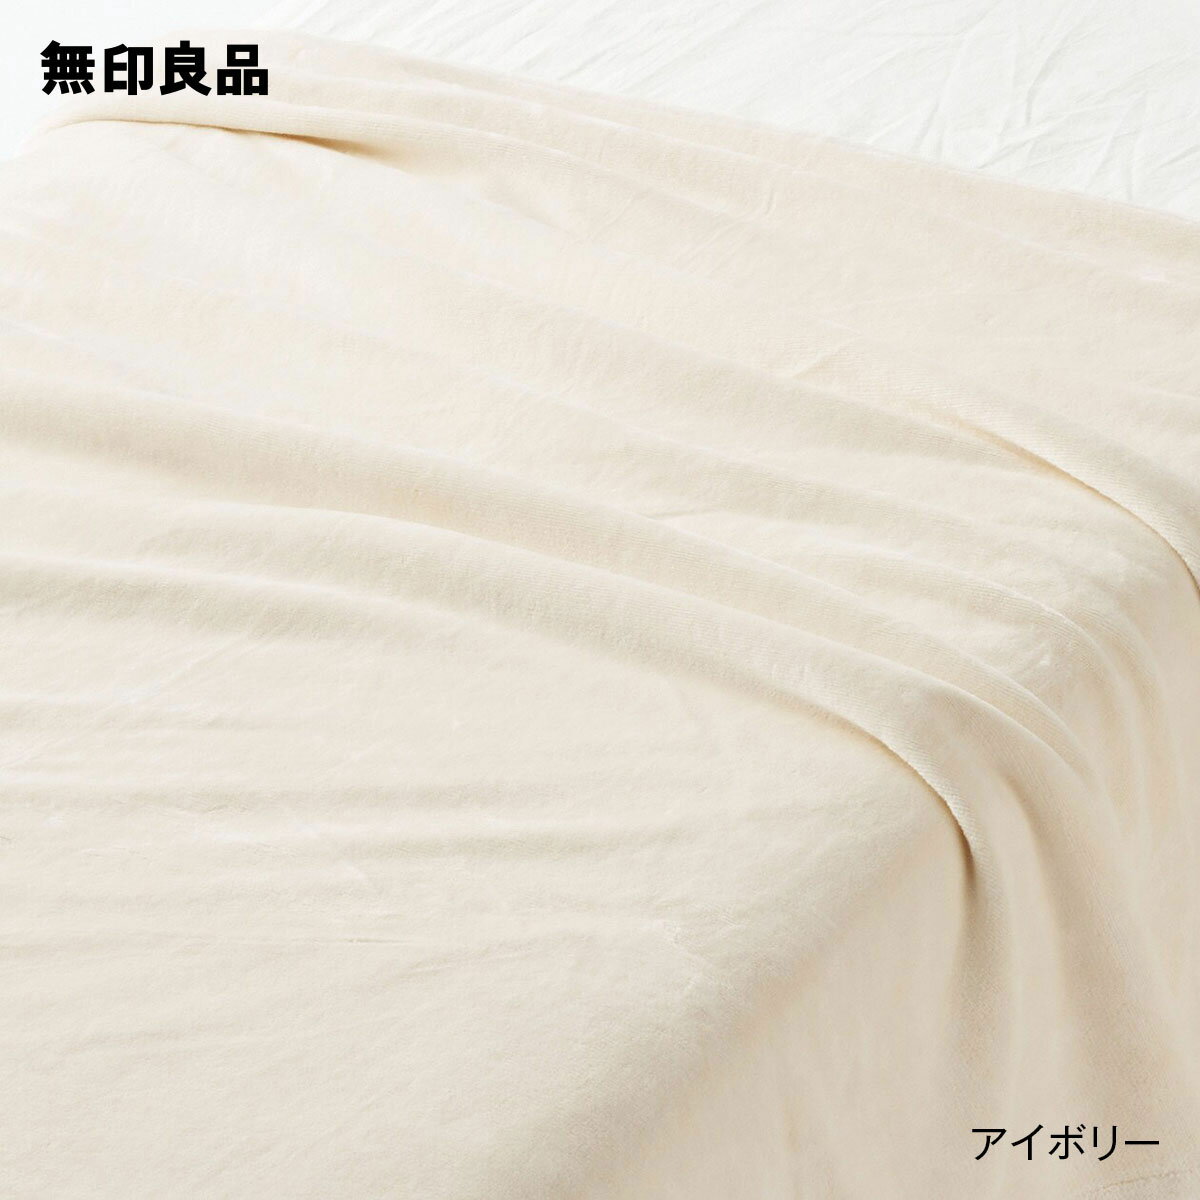 無印良品 ブランケット 【無印良品 公式】【ダブル】あったか綿 毛布・180×200cm